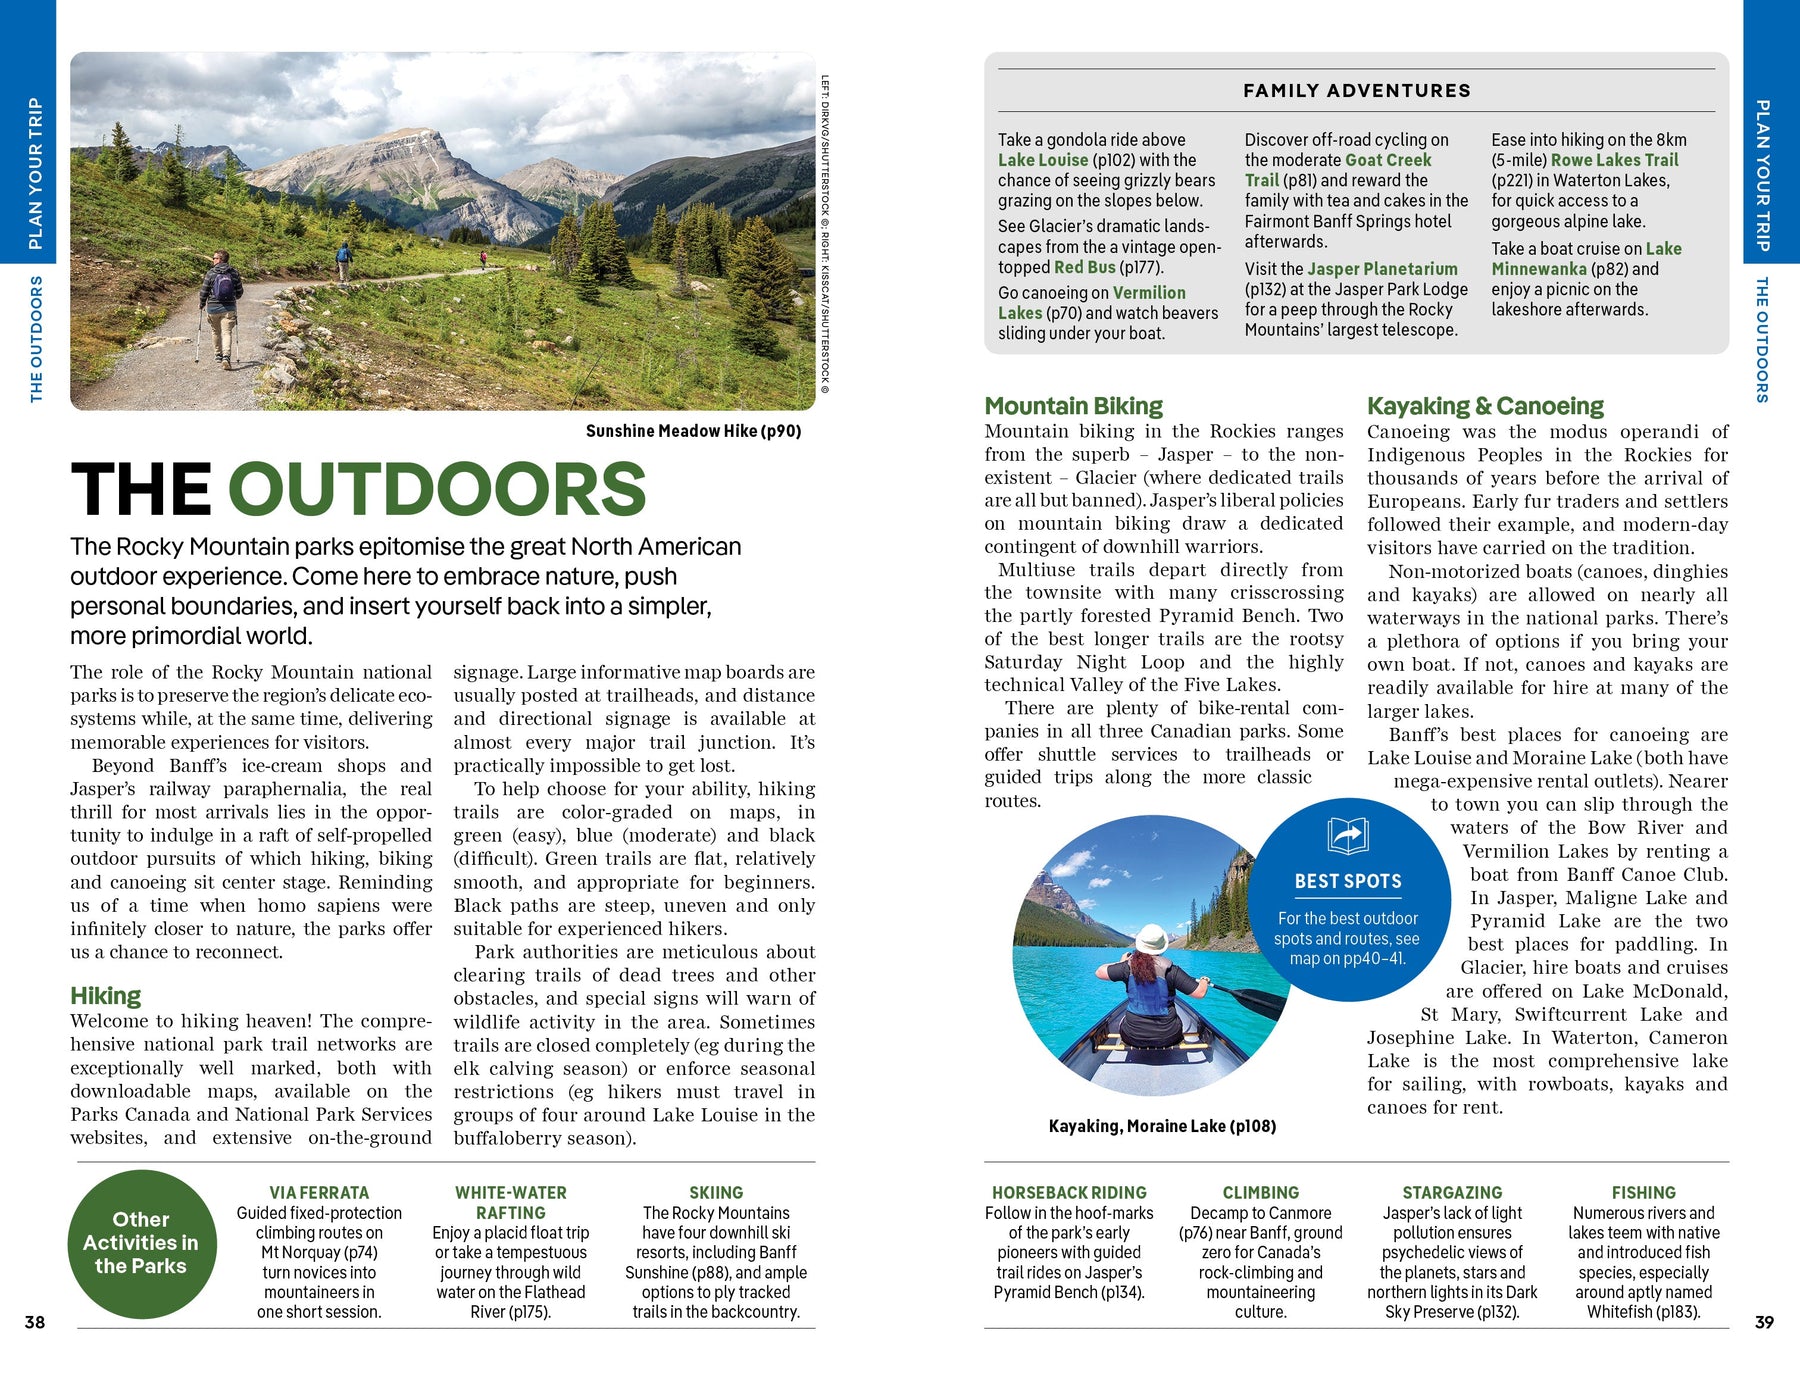 Banff, Jasper and Glacier National Parks - Book